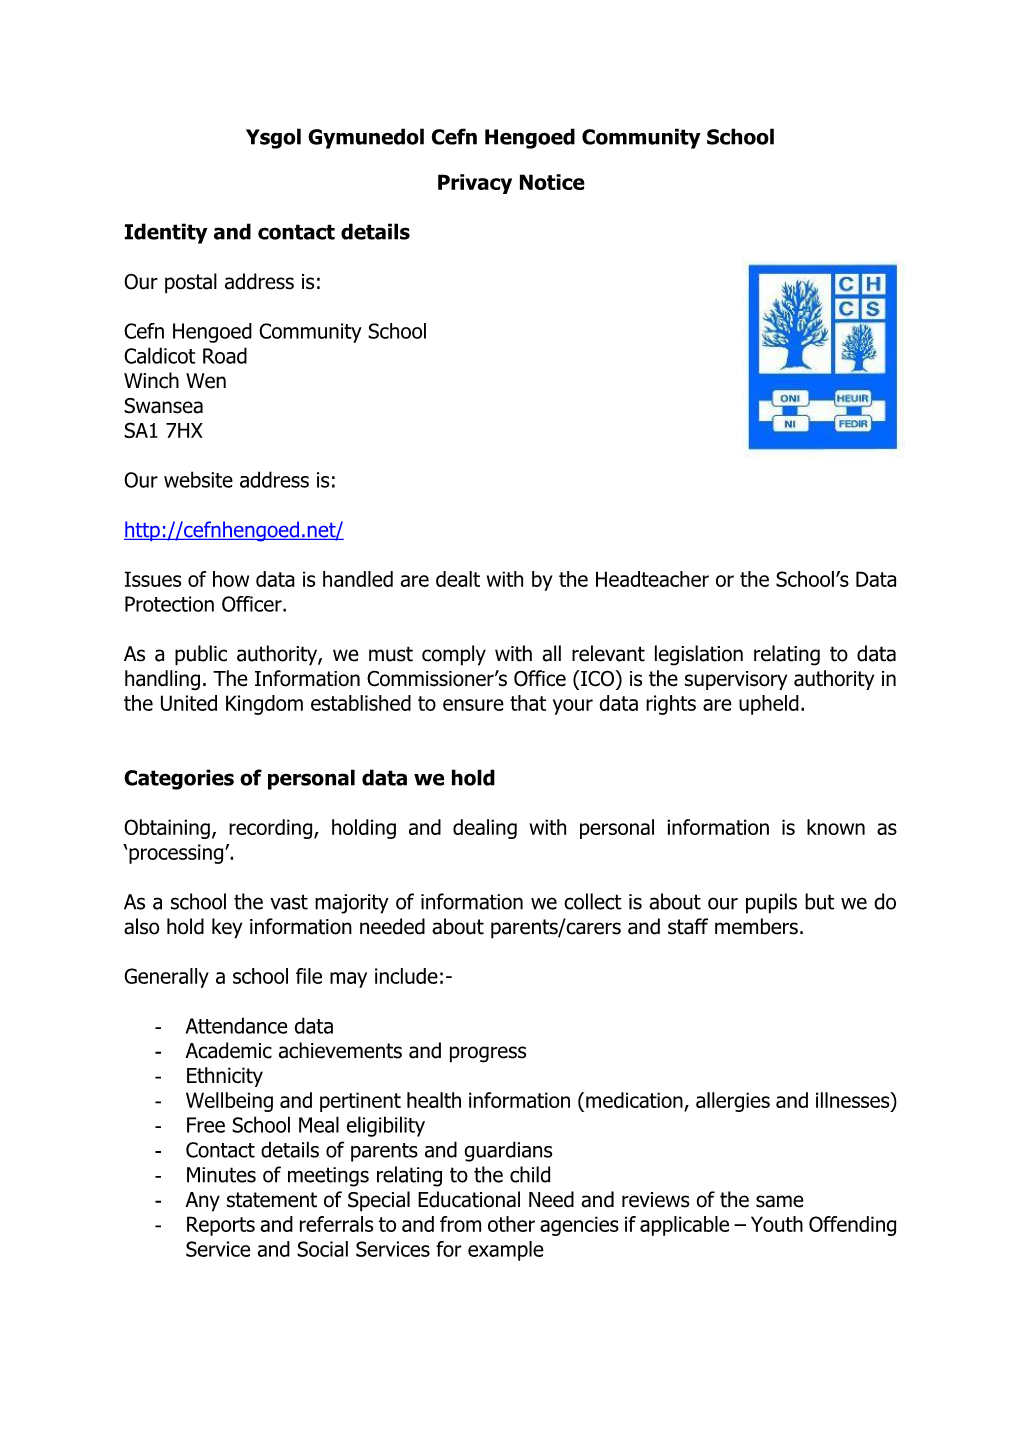 Ysgol Gymunedol Cefn Hengoed Community School Privacy Notice